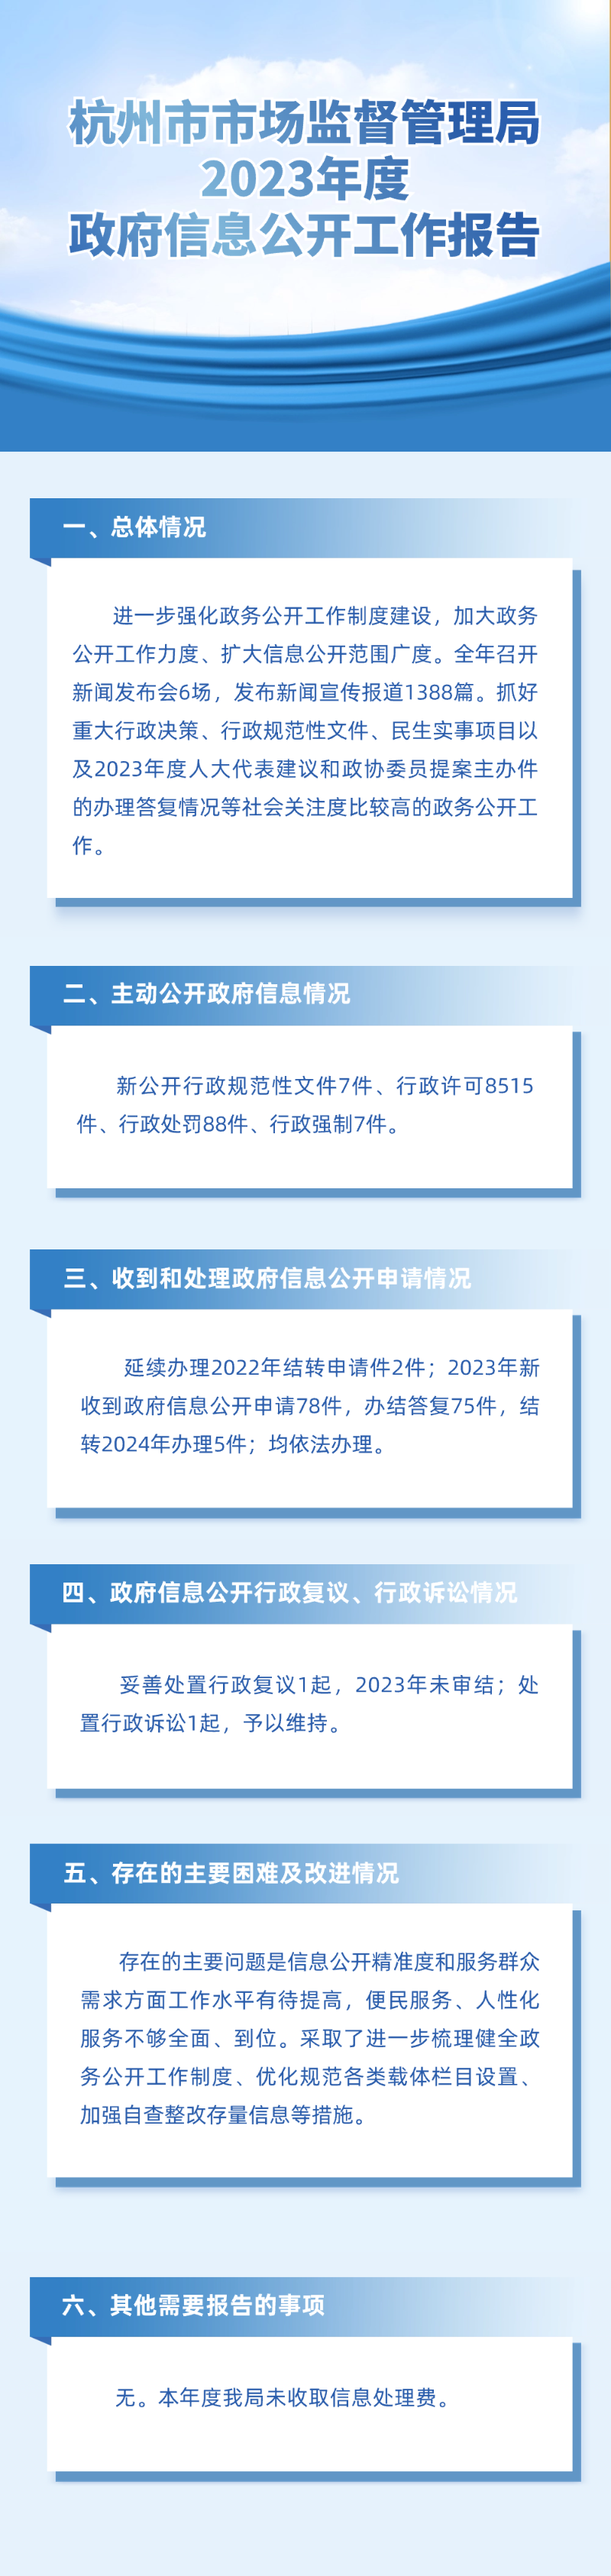 1.25-2023年政府信息公开工作报告.png